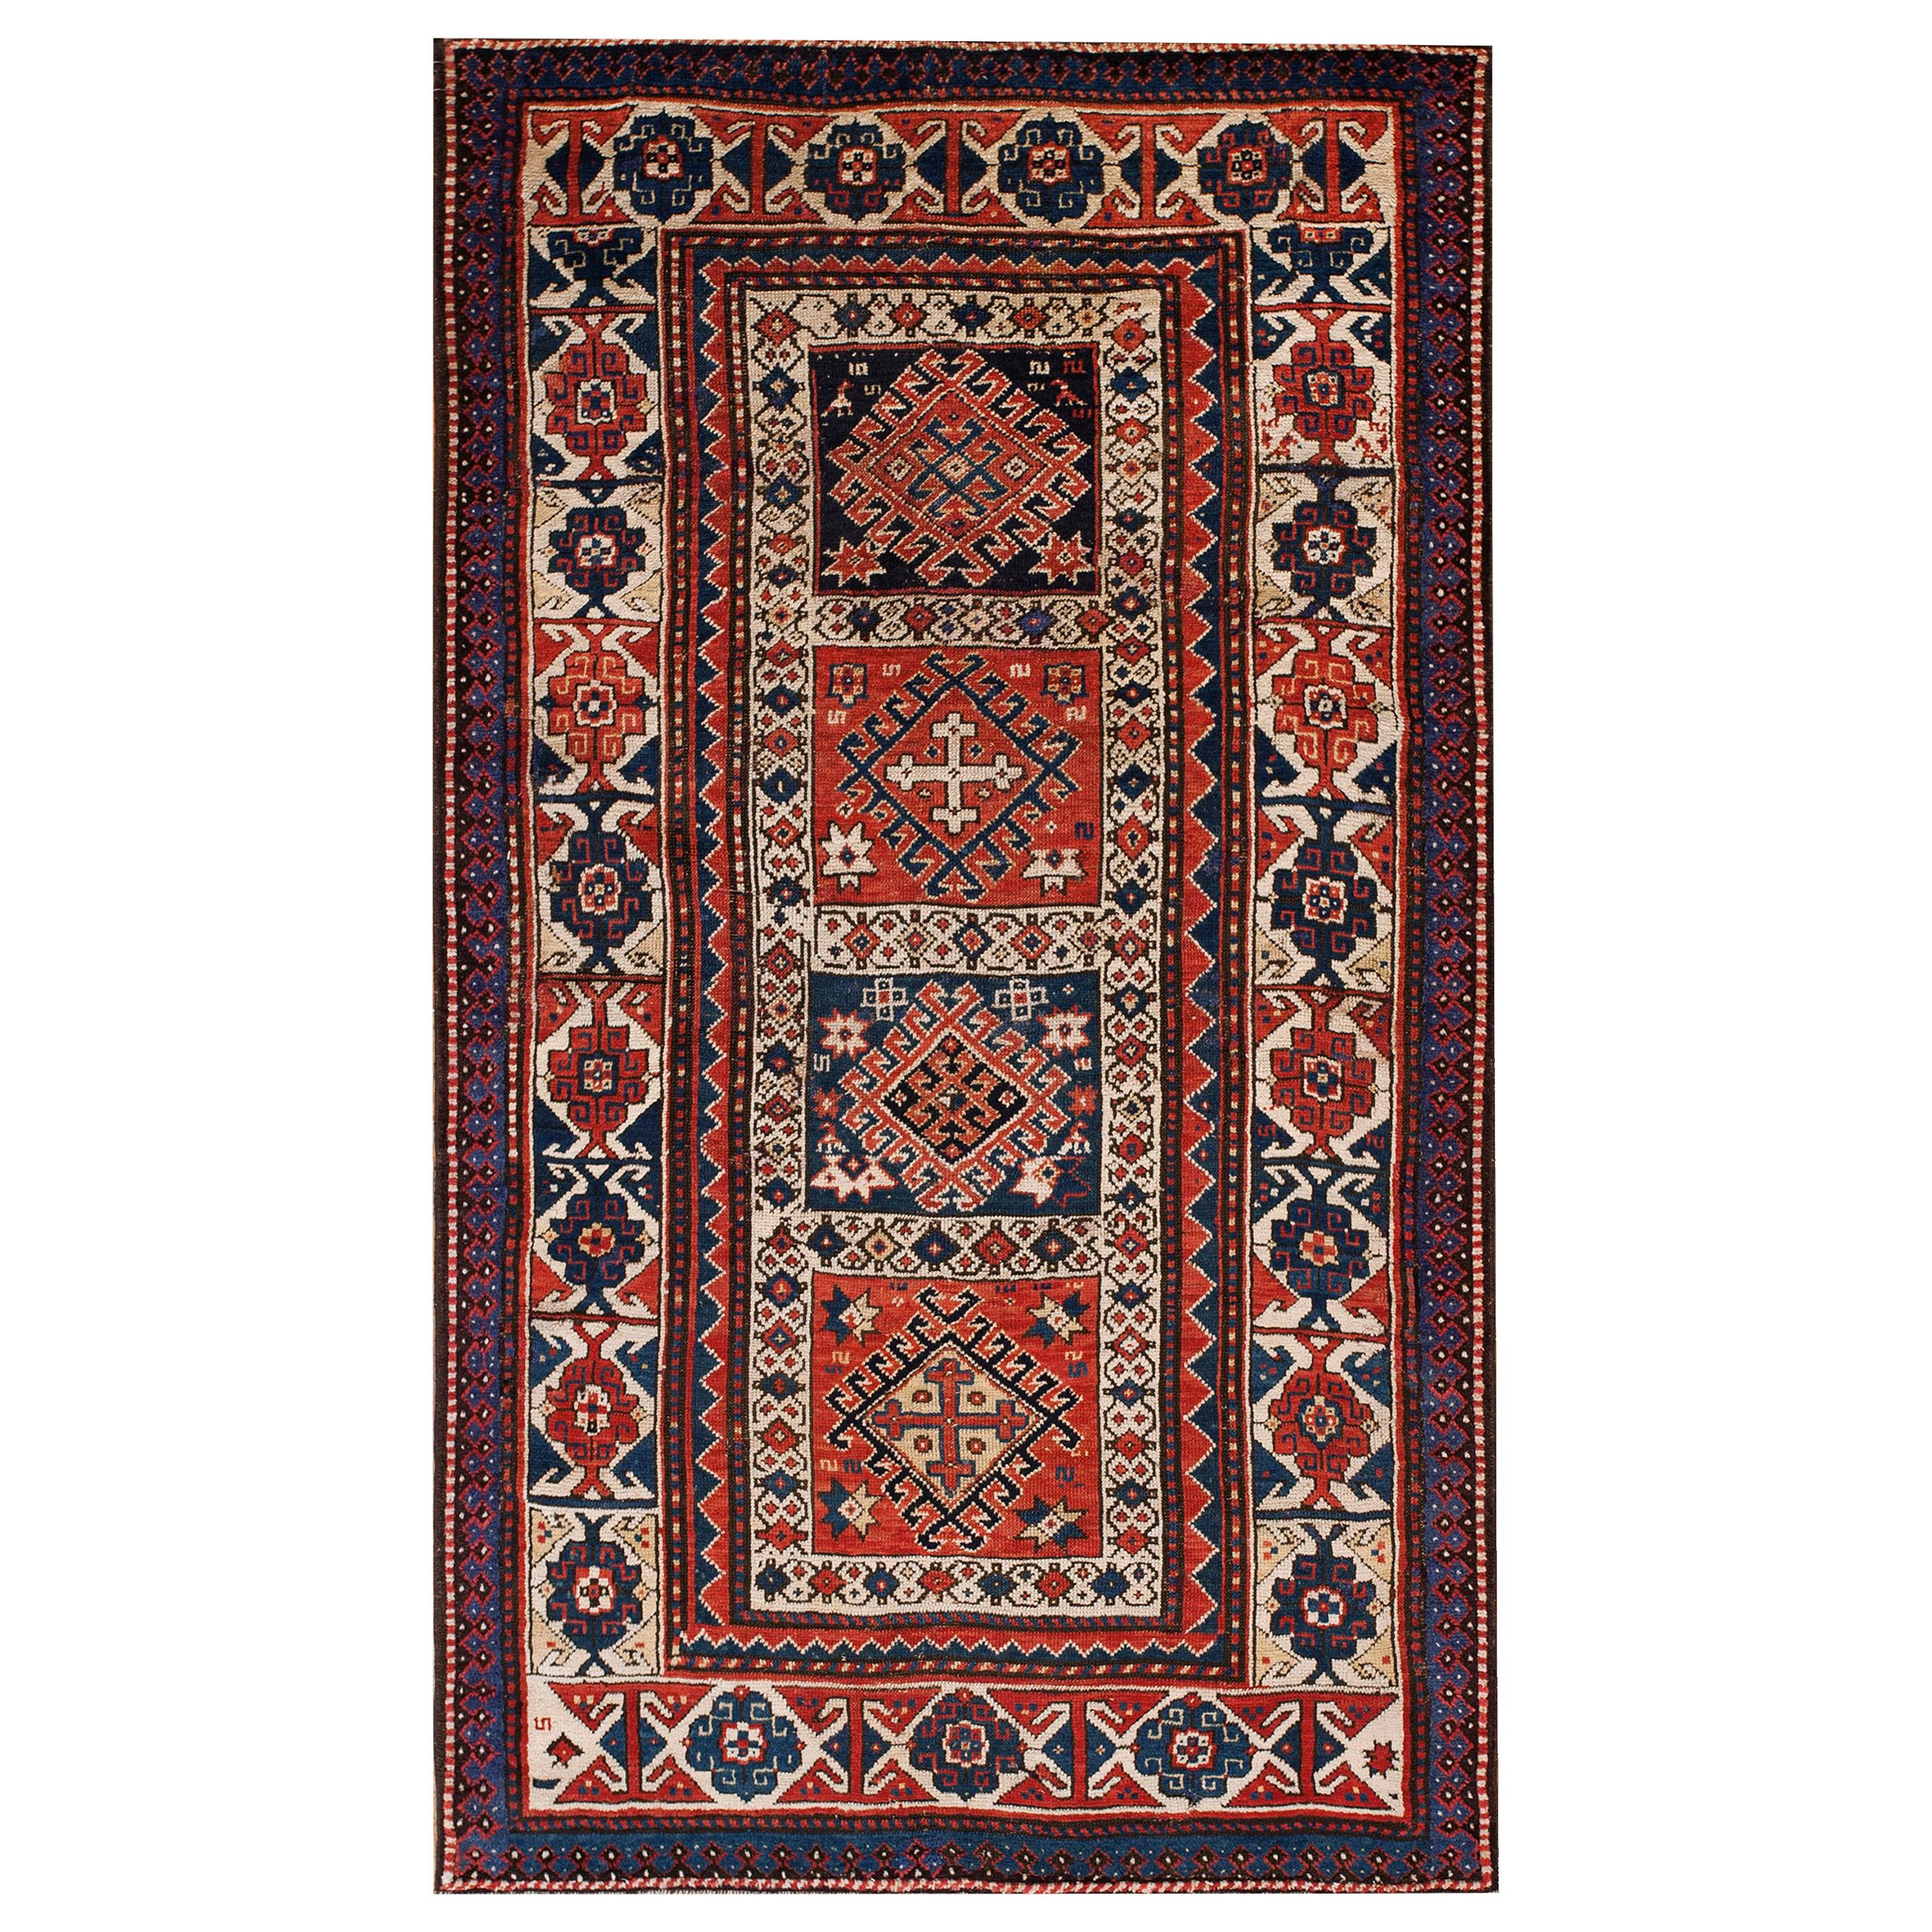 Kaukasischer Kazak-Teppich aus dem 19. Jahrhundert ( 3'8" x 6'9" - 112 x 206 )